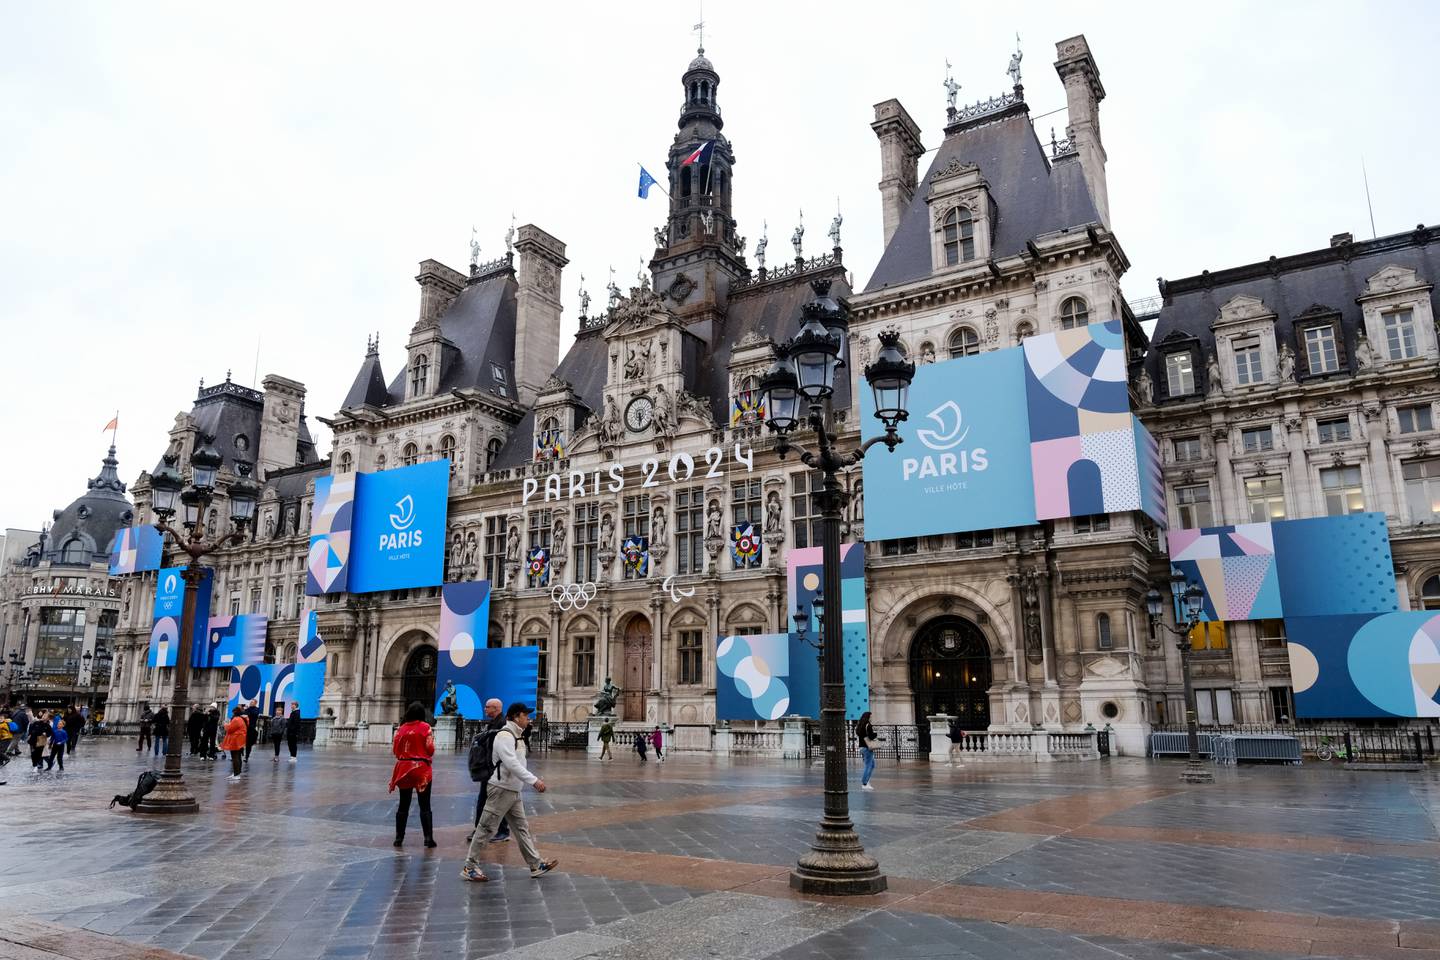 El ayuntamiento de París antes de los Juegos Olímpicos París 2024.

Fotografía: Shutterstock